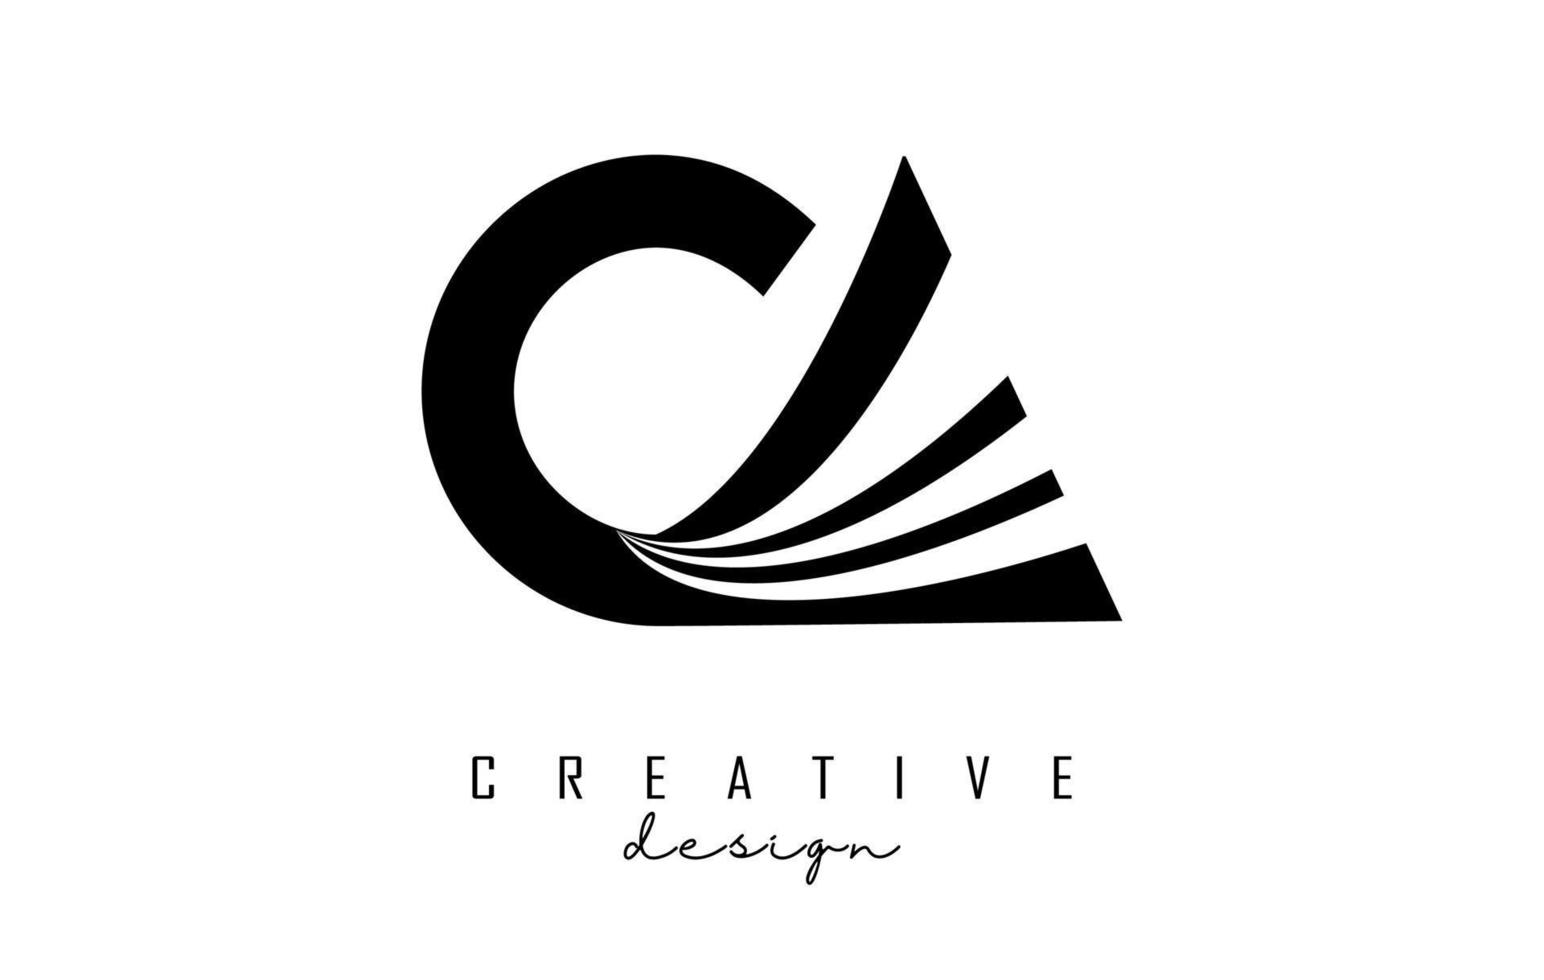 lettere nere creative ca ca logo con linee guida e concept design stradale. lettere con disegno geometrico. vettore